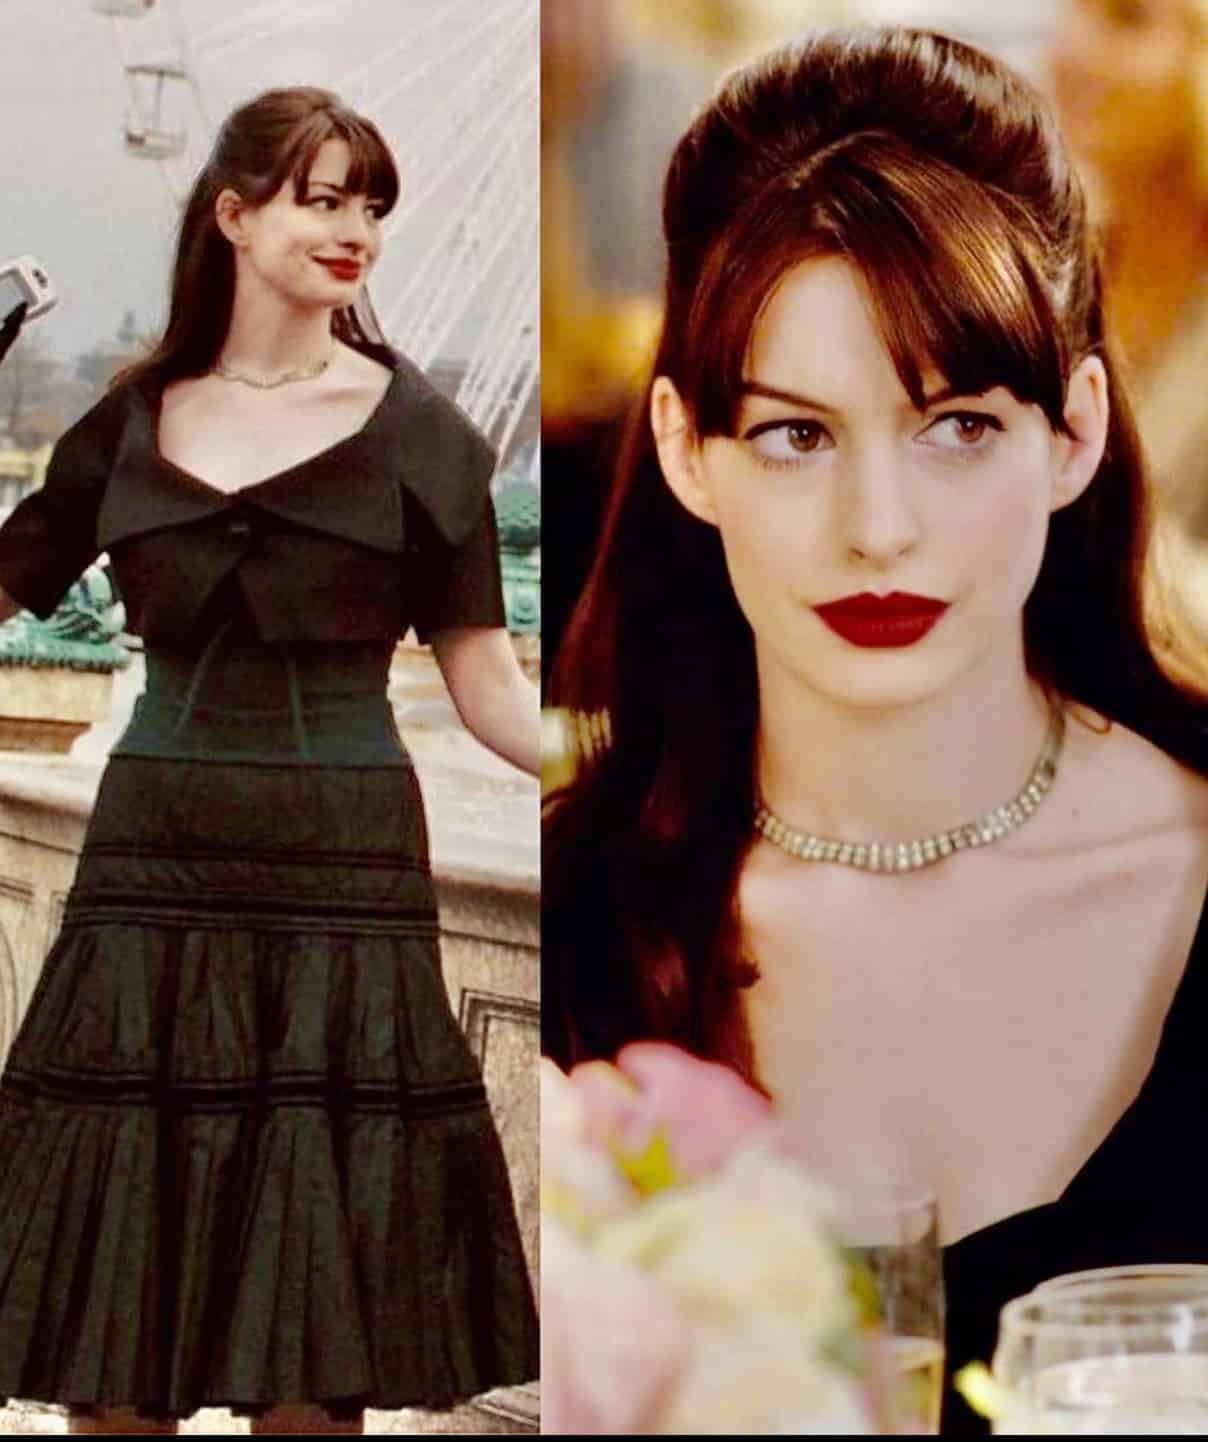 Anne Hathaway tus nqi siab tshaj plaws elegance